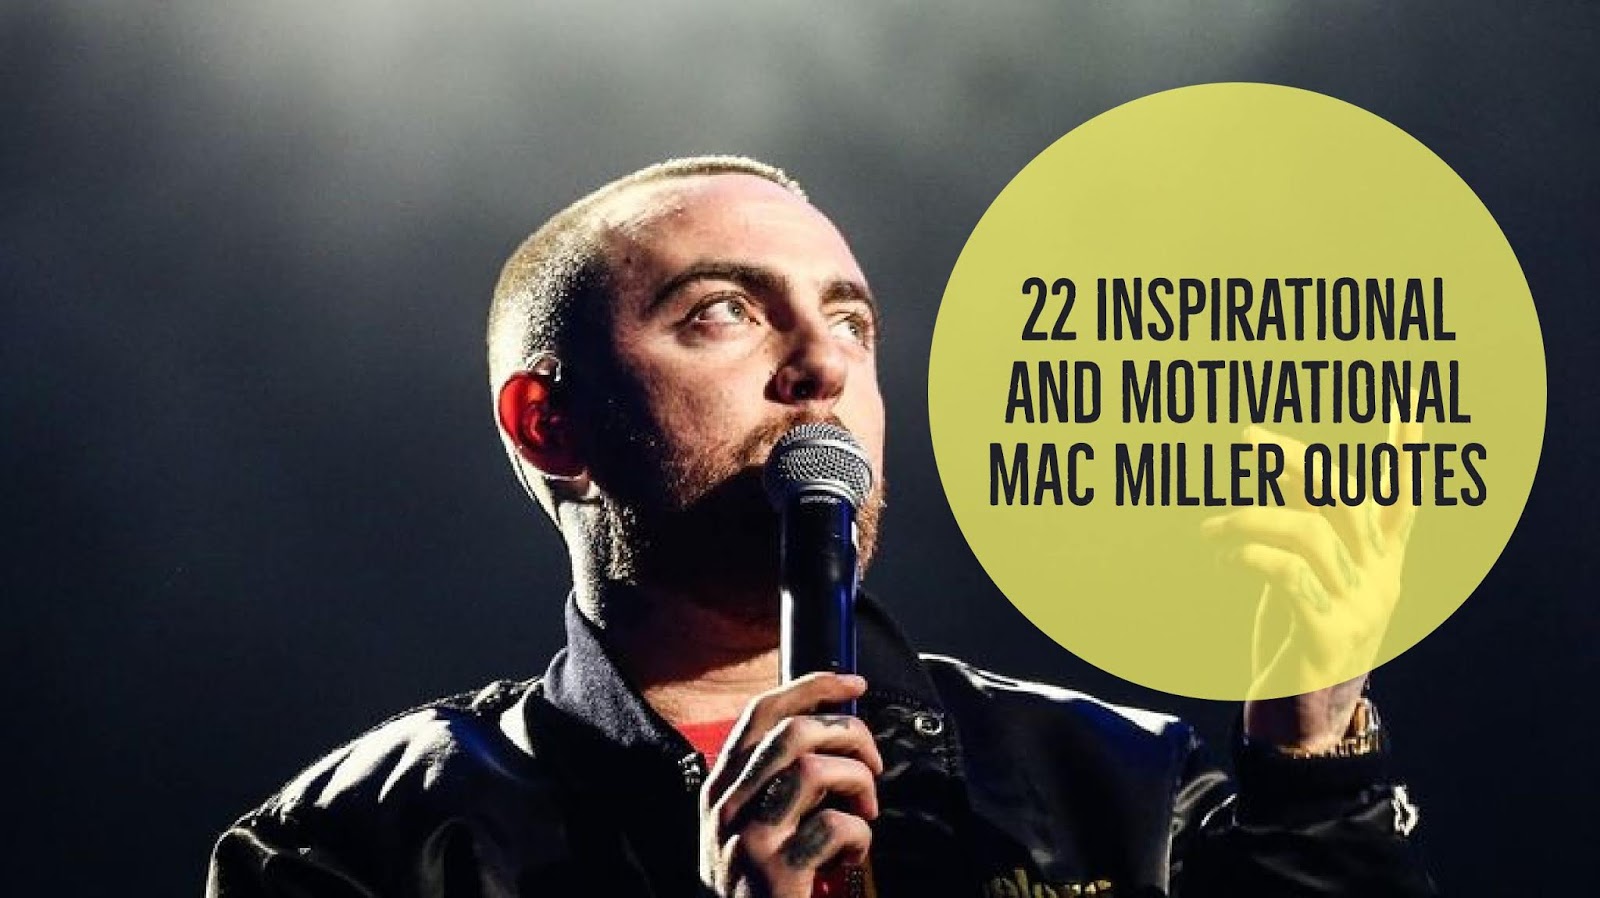 22 Inspirational and motivational Mac Miller quotes - Winspira1600 x 898